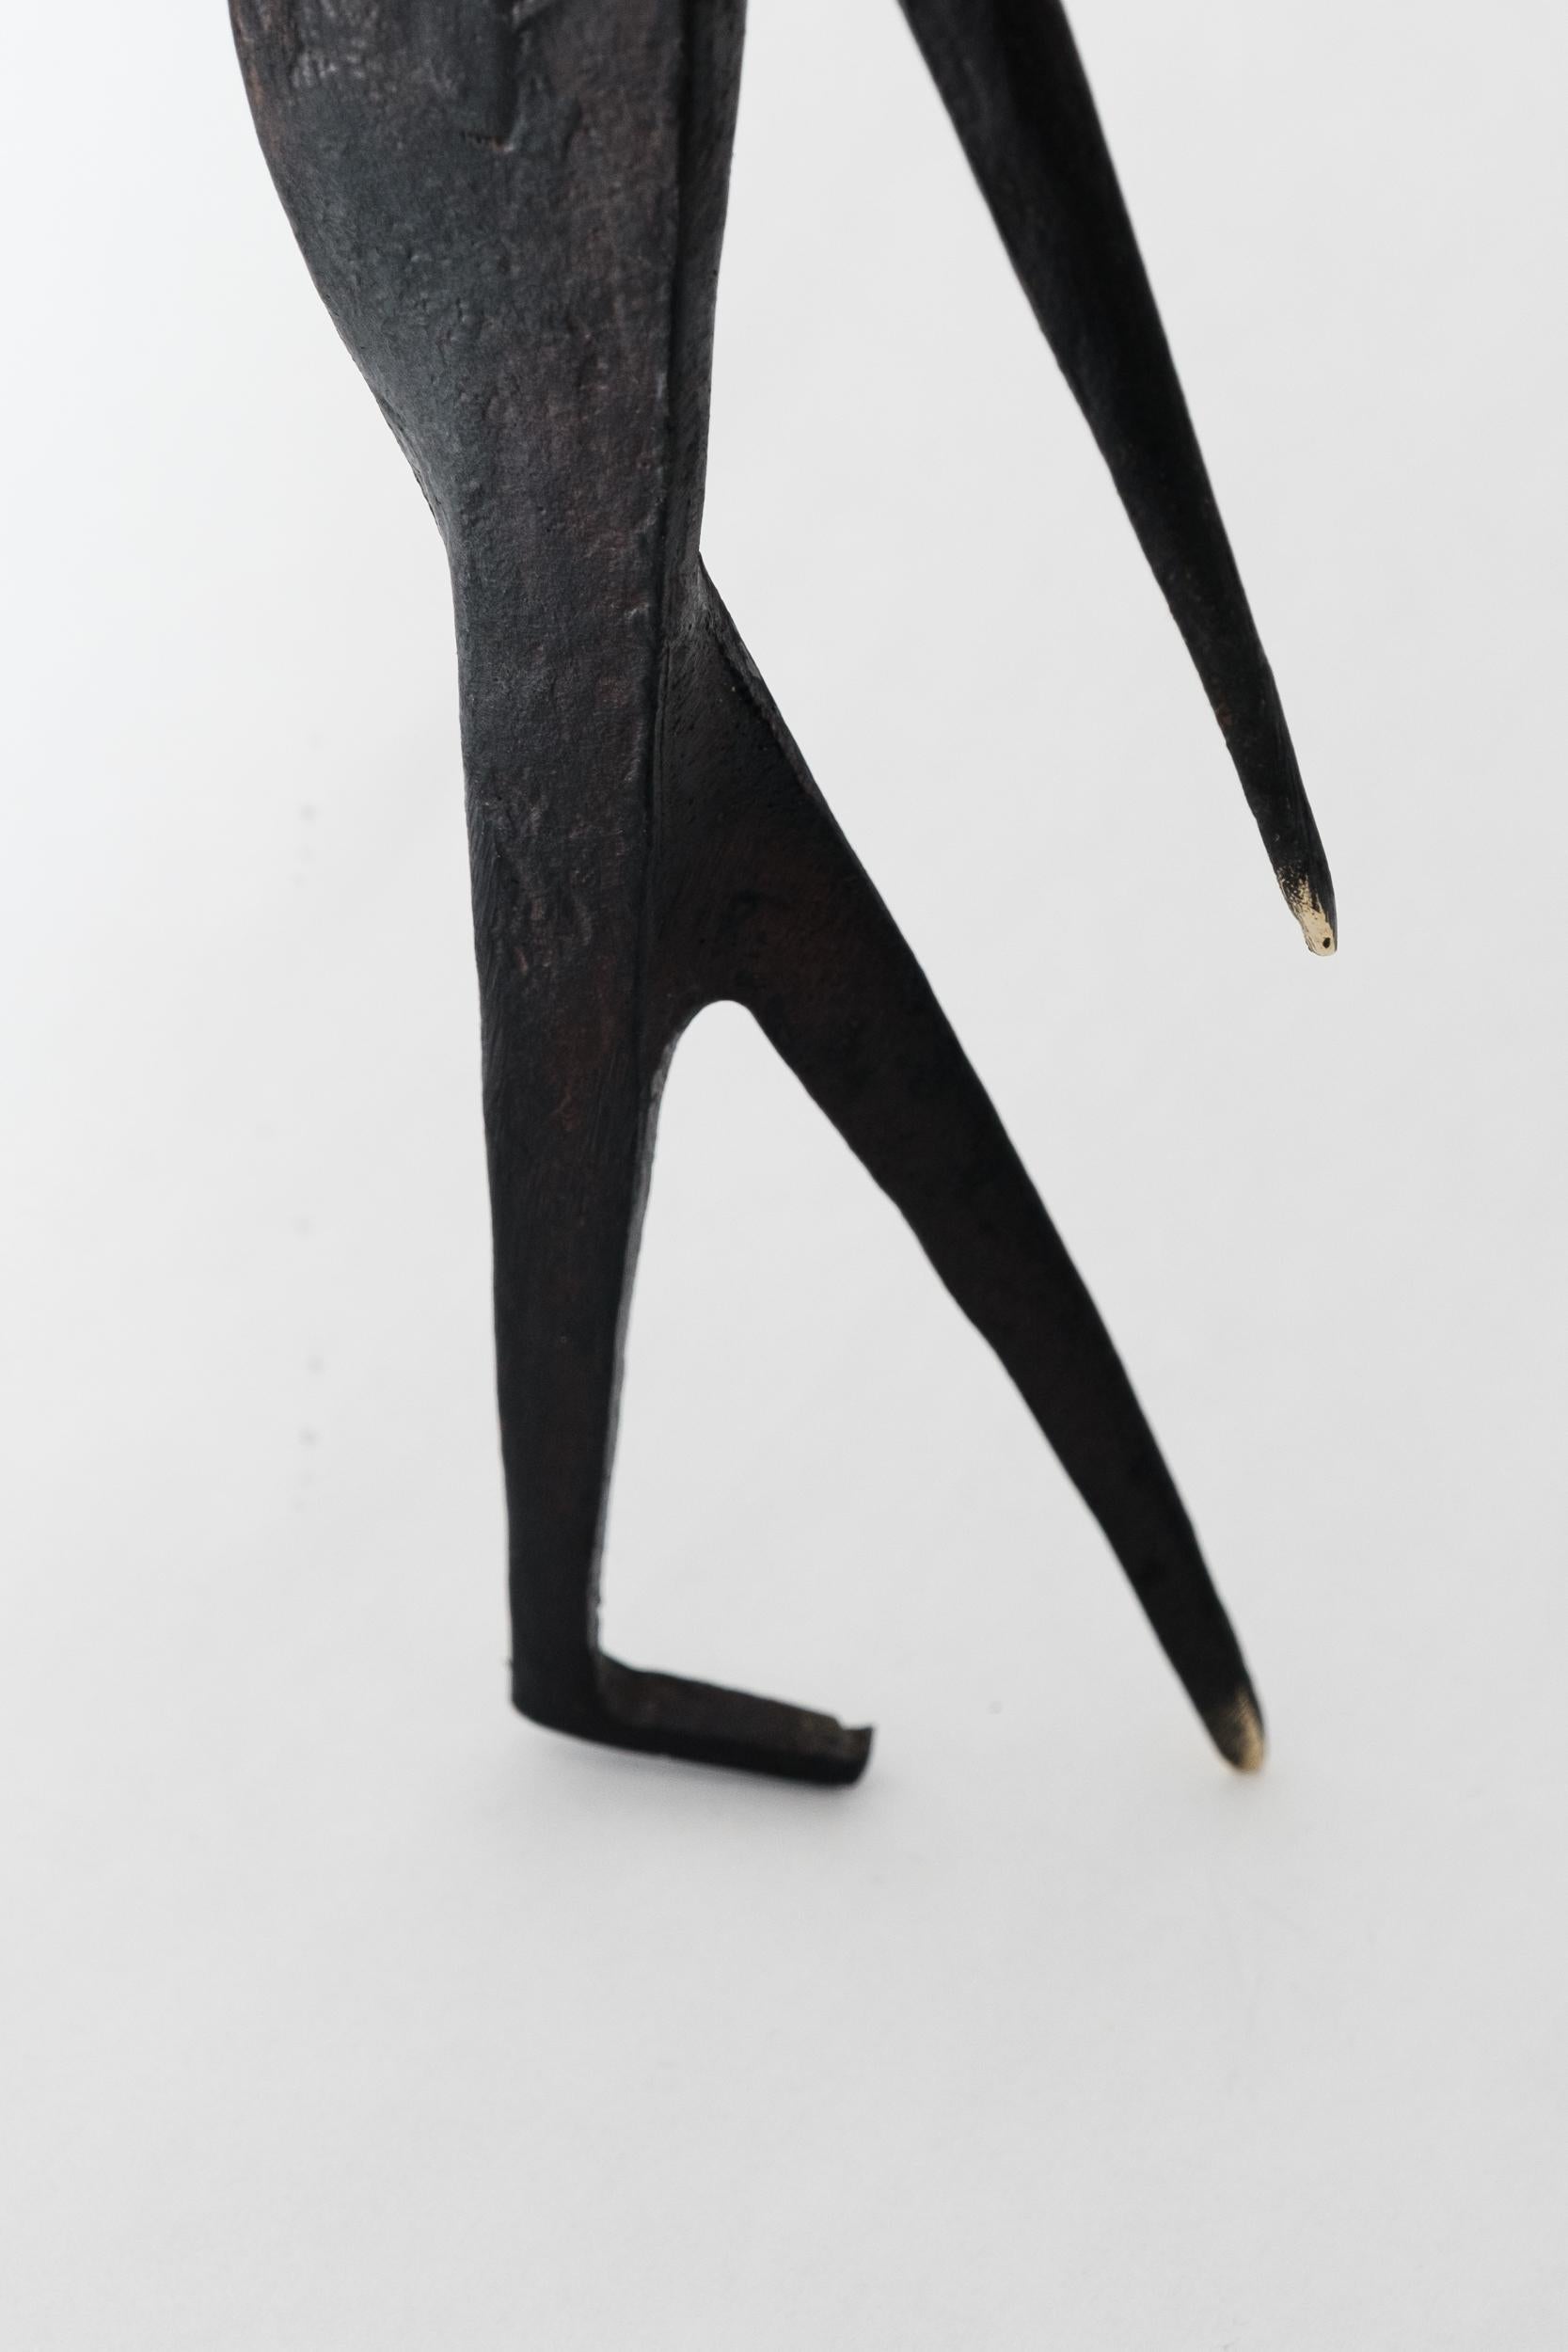 Carl Auböck Modèle #4060 'Homme avec bâton' Sculpture en laiton en vente 12